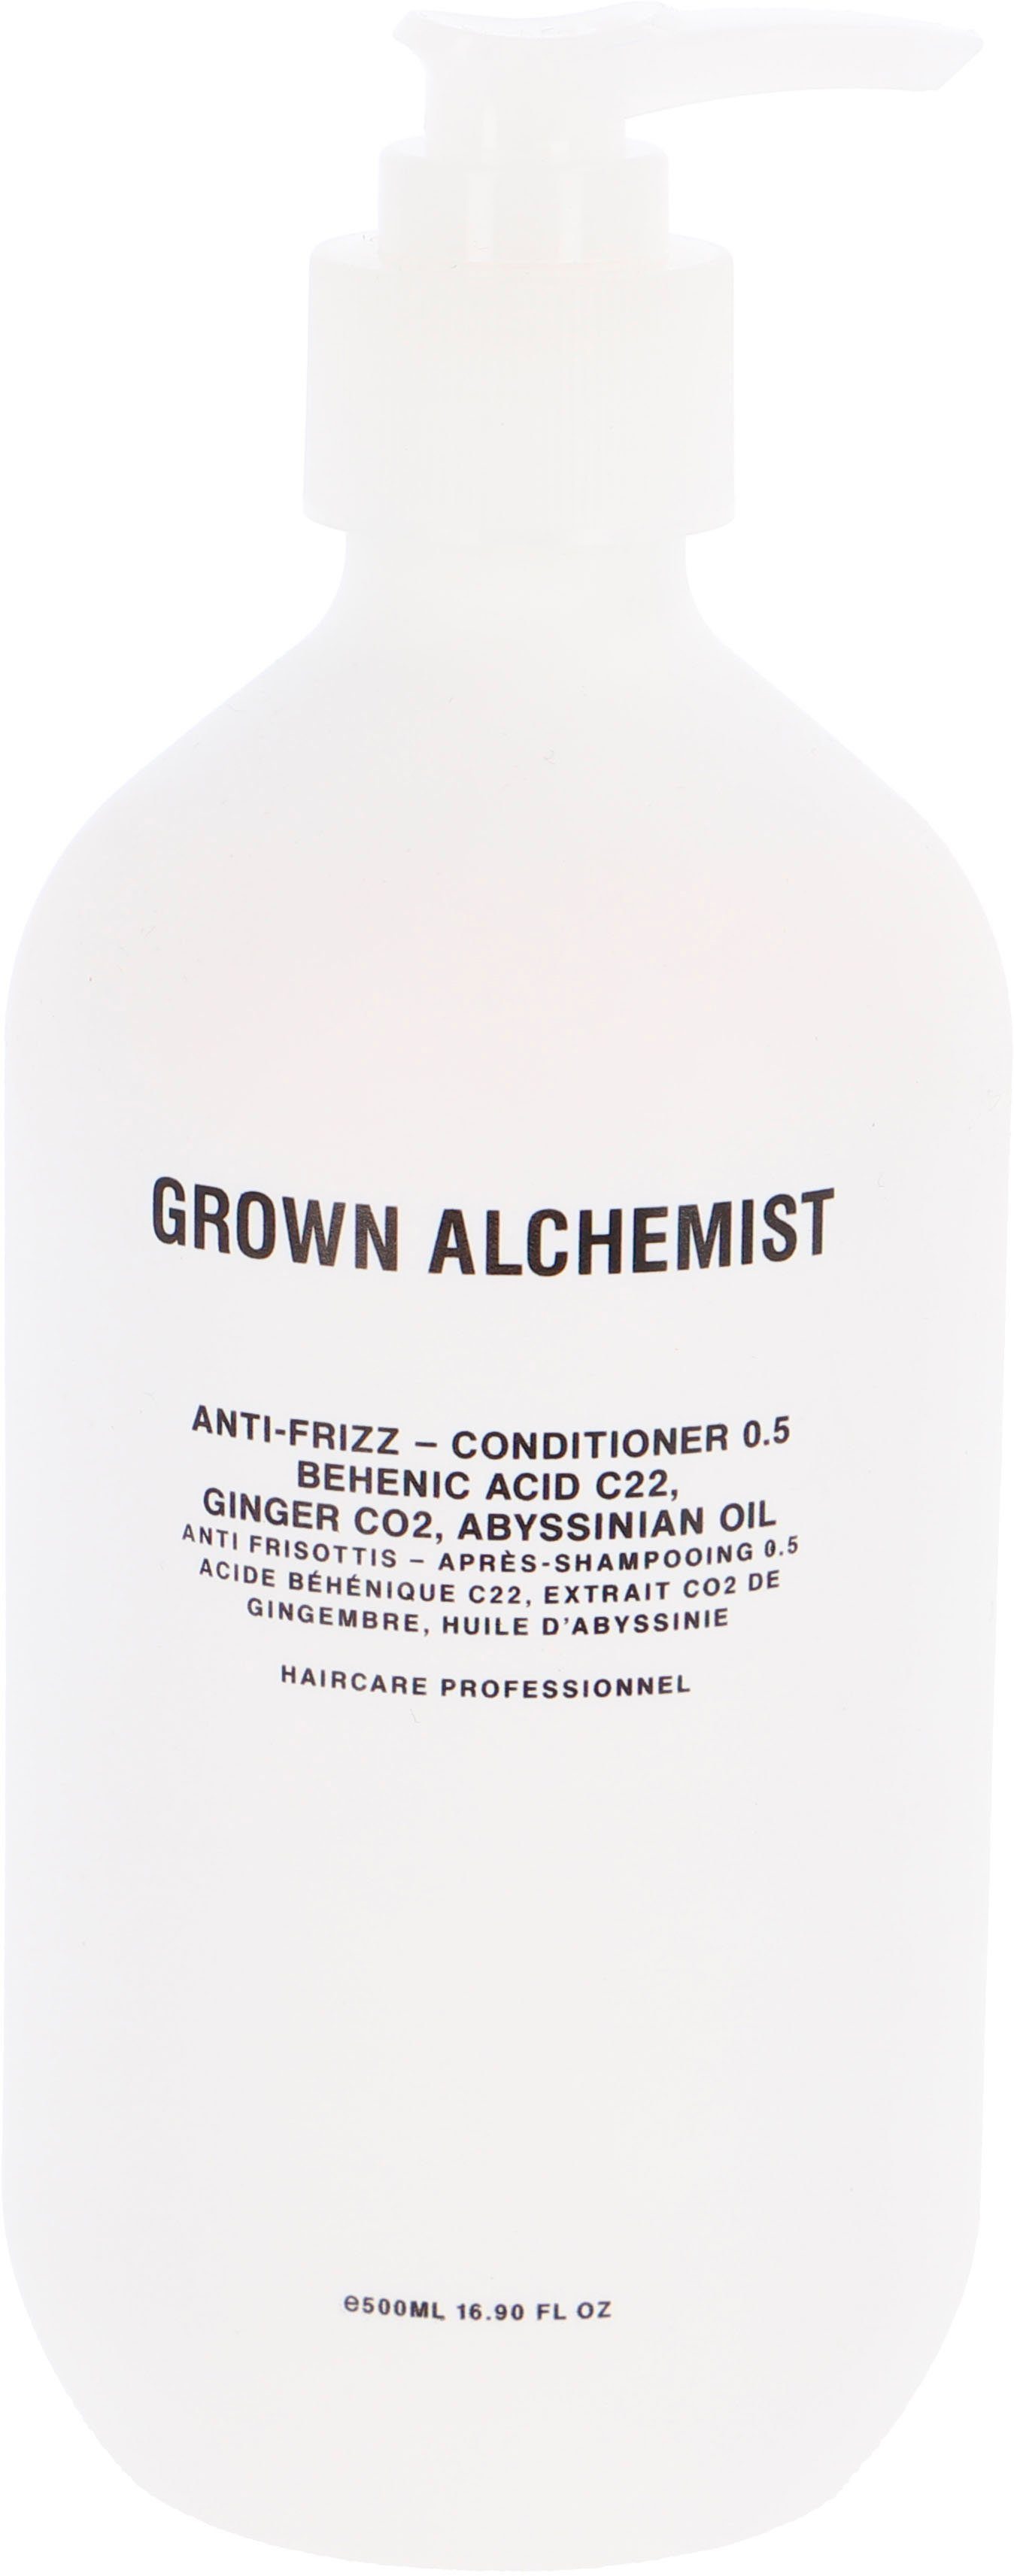 【Auffüllen】 GROWN ALCHEMIST Haarspülung Anti-Frizz Ginger - Conditioner Oil Acid Behenic CO2, 0.5:, Abyssinian C22